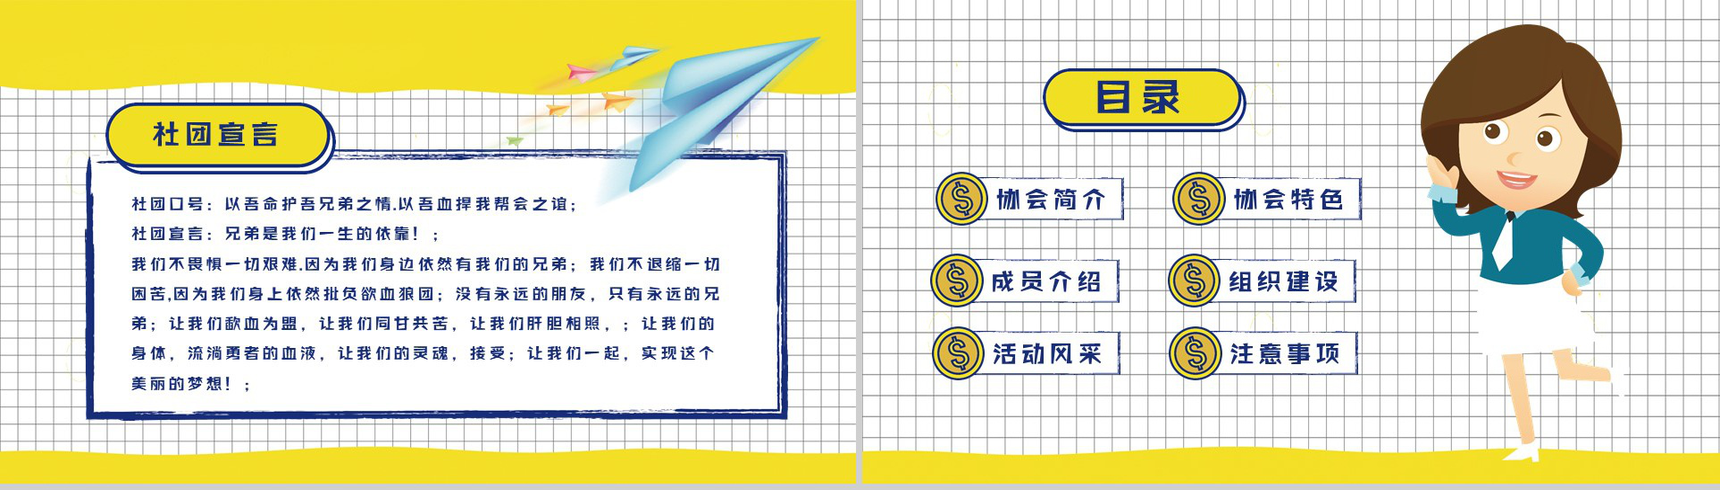 黄色扁平化卡通商务社团招新计划活动方案招聘PPT模板-2